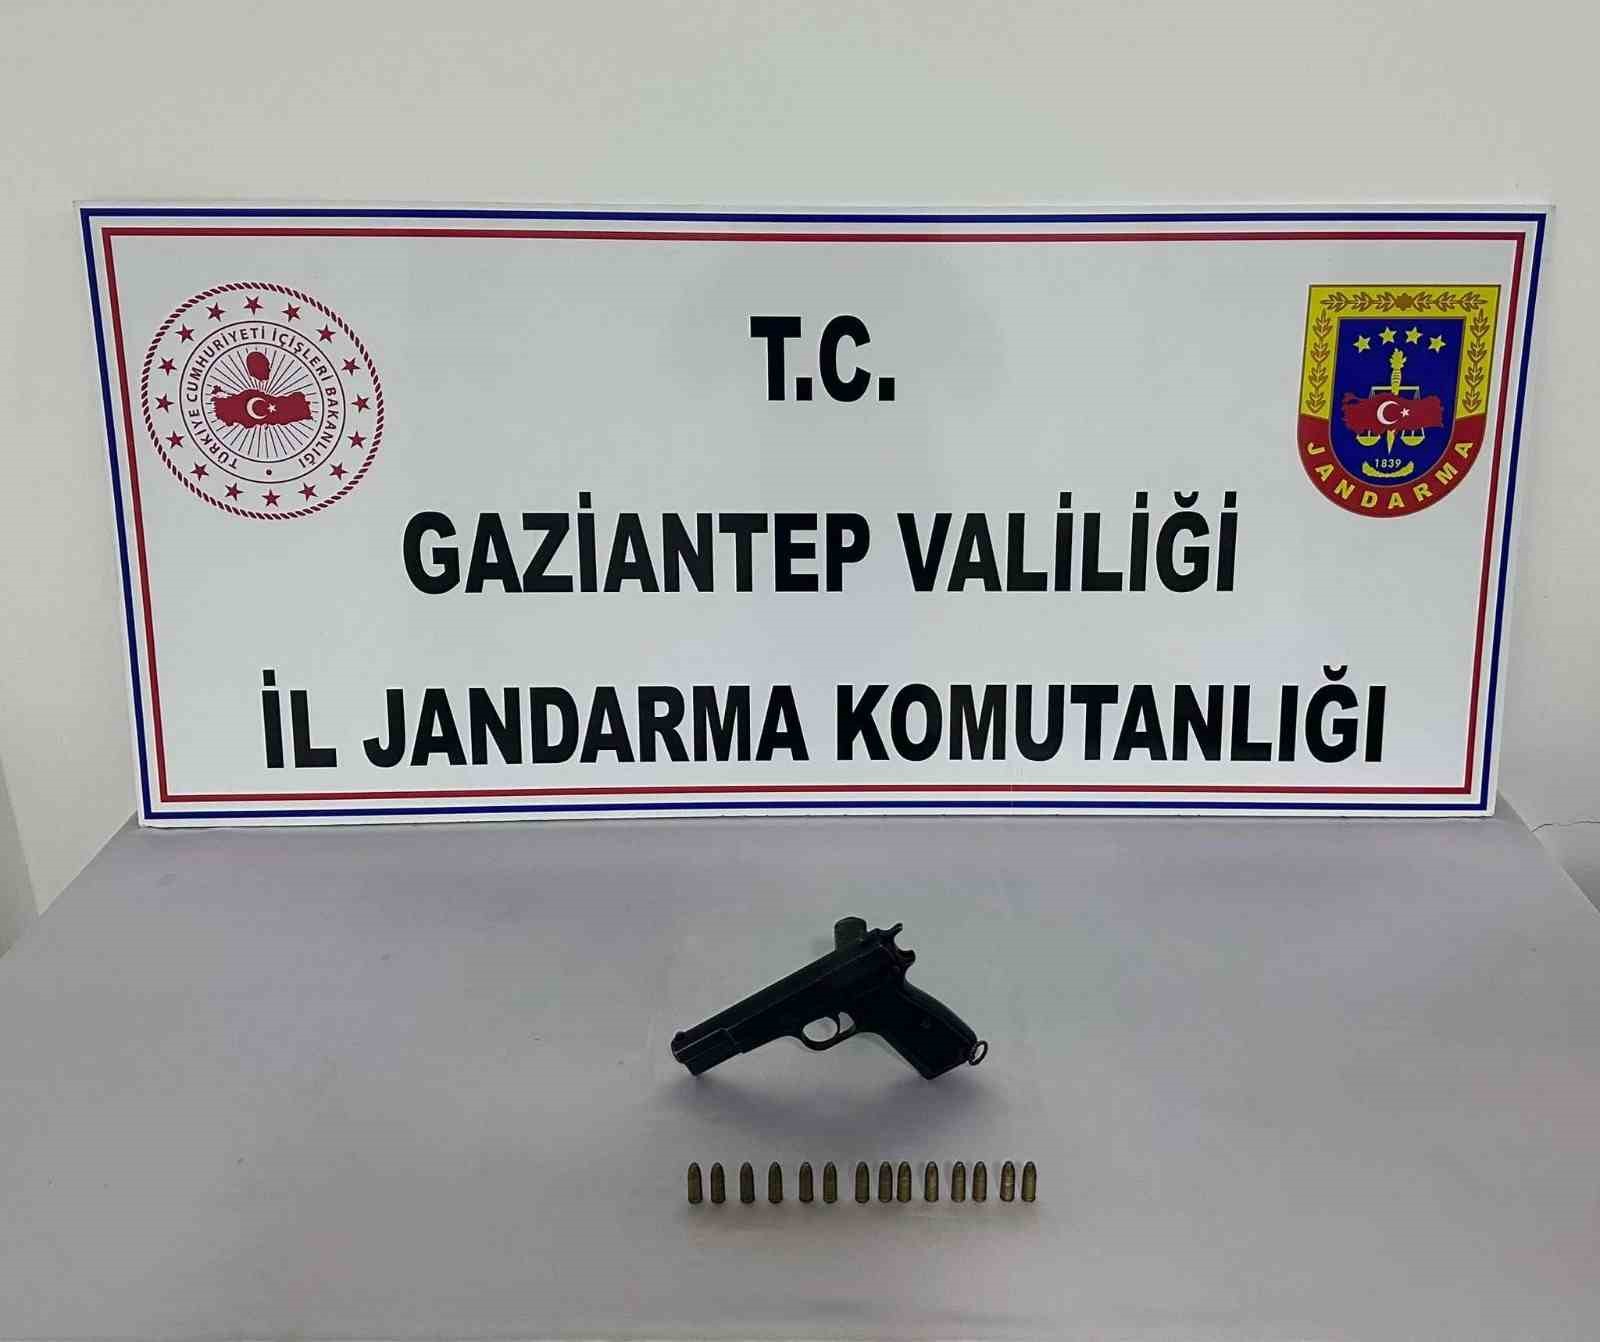 Gaziantep’te 14 adet ruhsatsız silah ele geçirildi: 11 gözaltı
